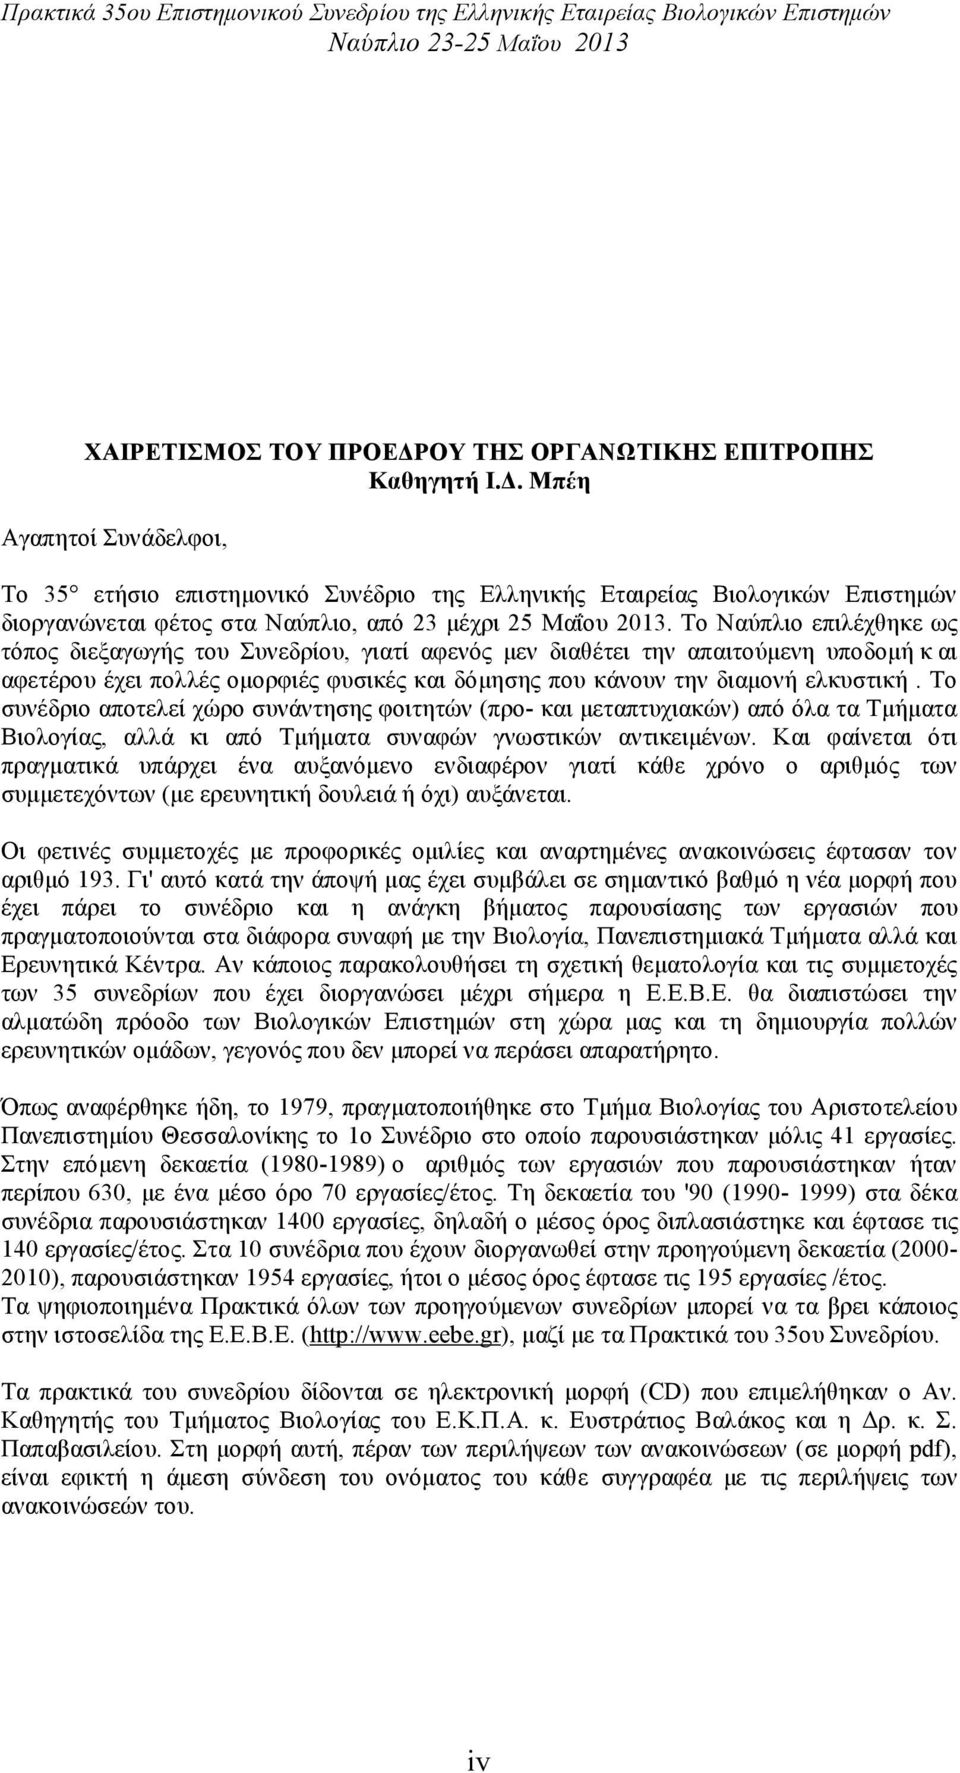 Μπέη Αγαπητοί Συνάδελφοι, Το 35 ετήσιο επιστηµονικό Συνέδριο της Ελληνικής Εταιρείας Βιολογικών Επιστηµών διοργανώνεται φέτος στα Ναύπλιο, από 23 µέχρι 25 Μαΐου 2013.